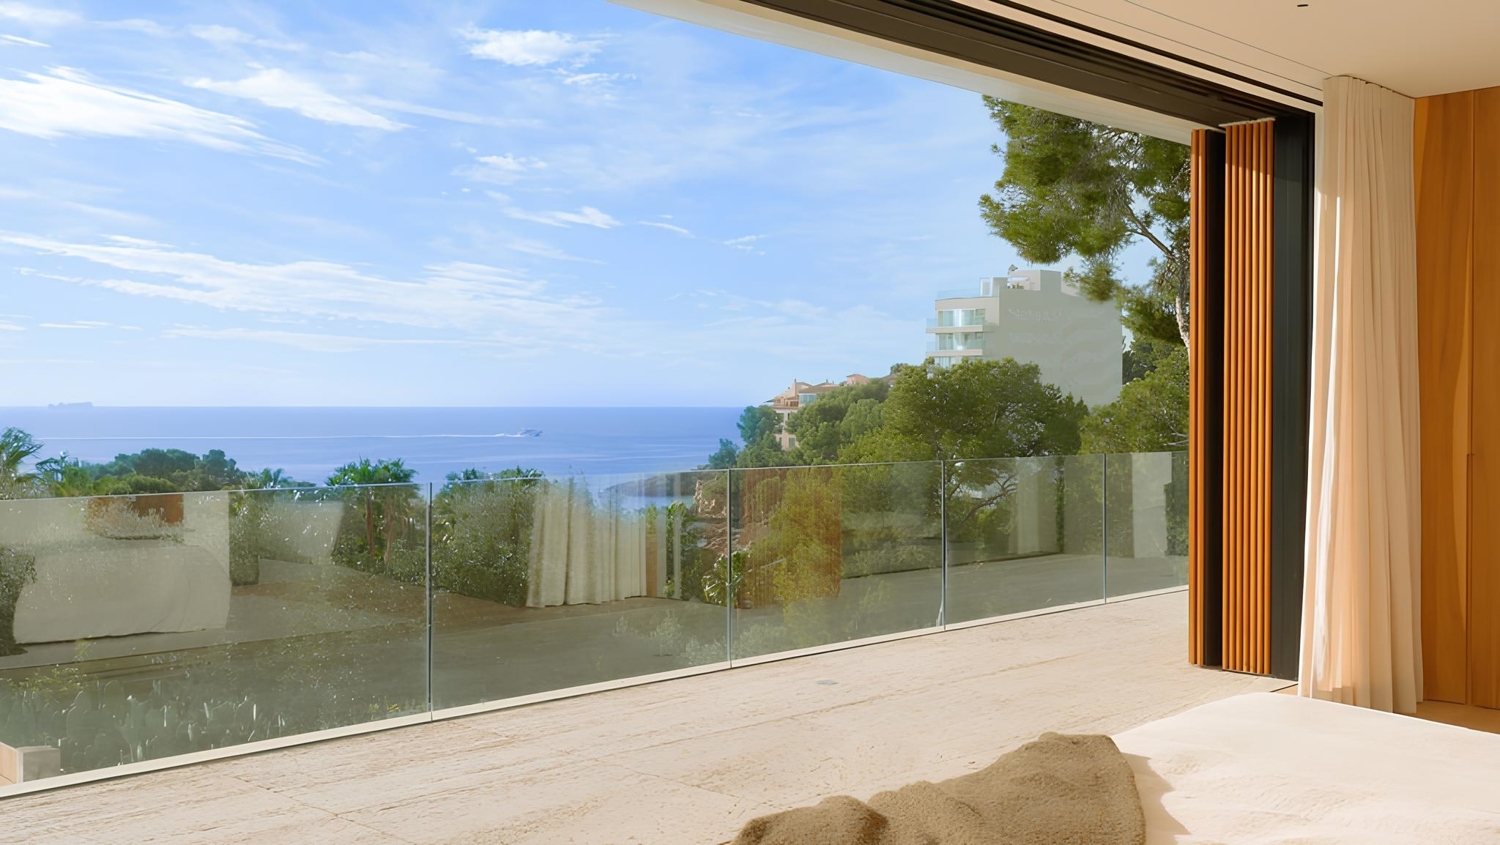 Cautivadora villa con vistas al mar en Old Bendinat con 950 m2 de lujosa vivienda